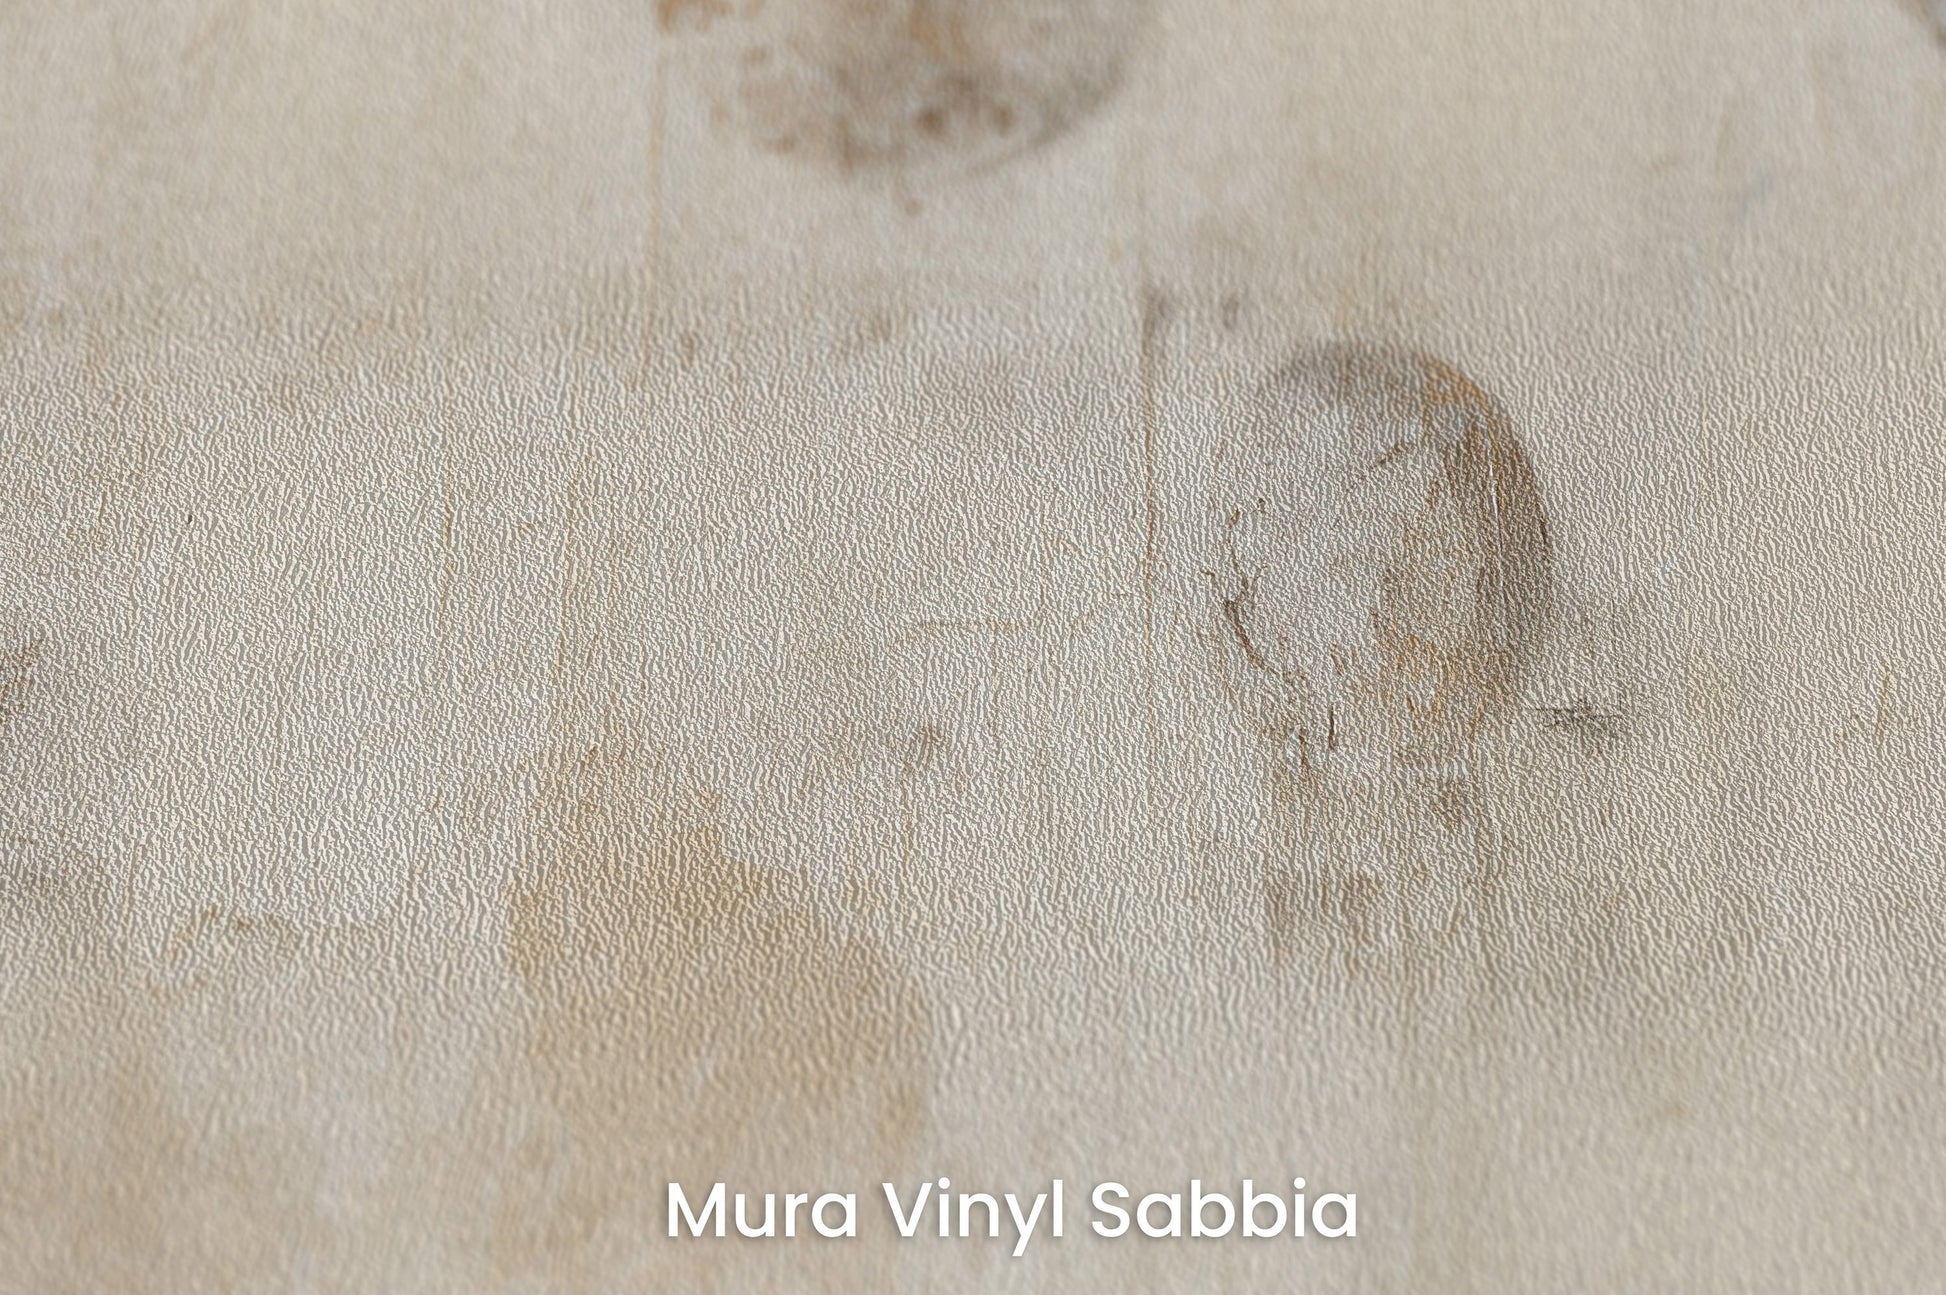 Zbliżenie na artystyczną fototapetę o nazwie VINTAGE PLANETARY MOTIFS na podłożu Mura Vinyl Sabbia struktura grubego ziarna piasku.